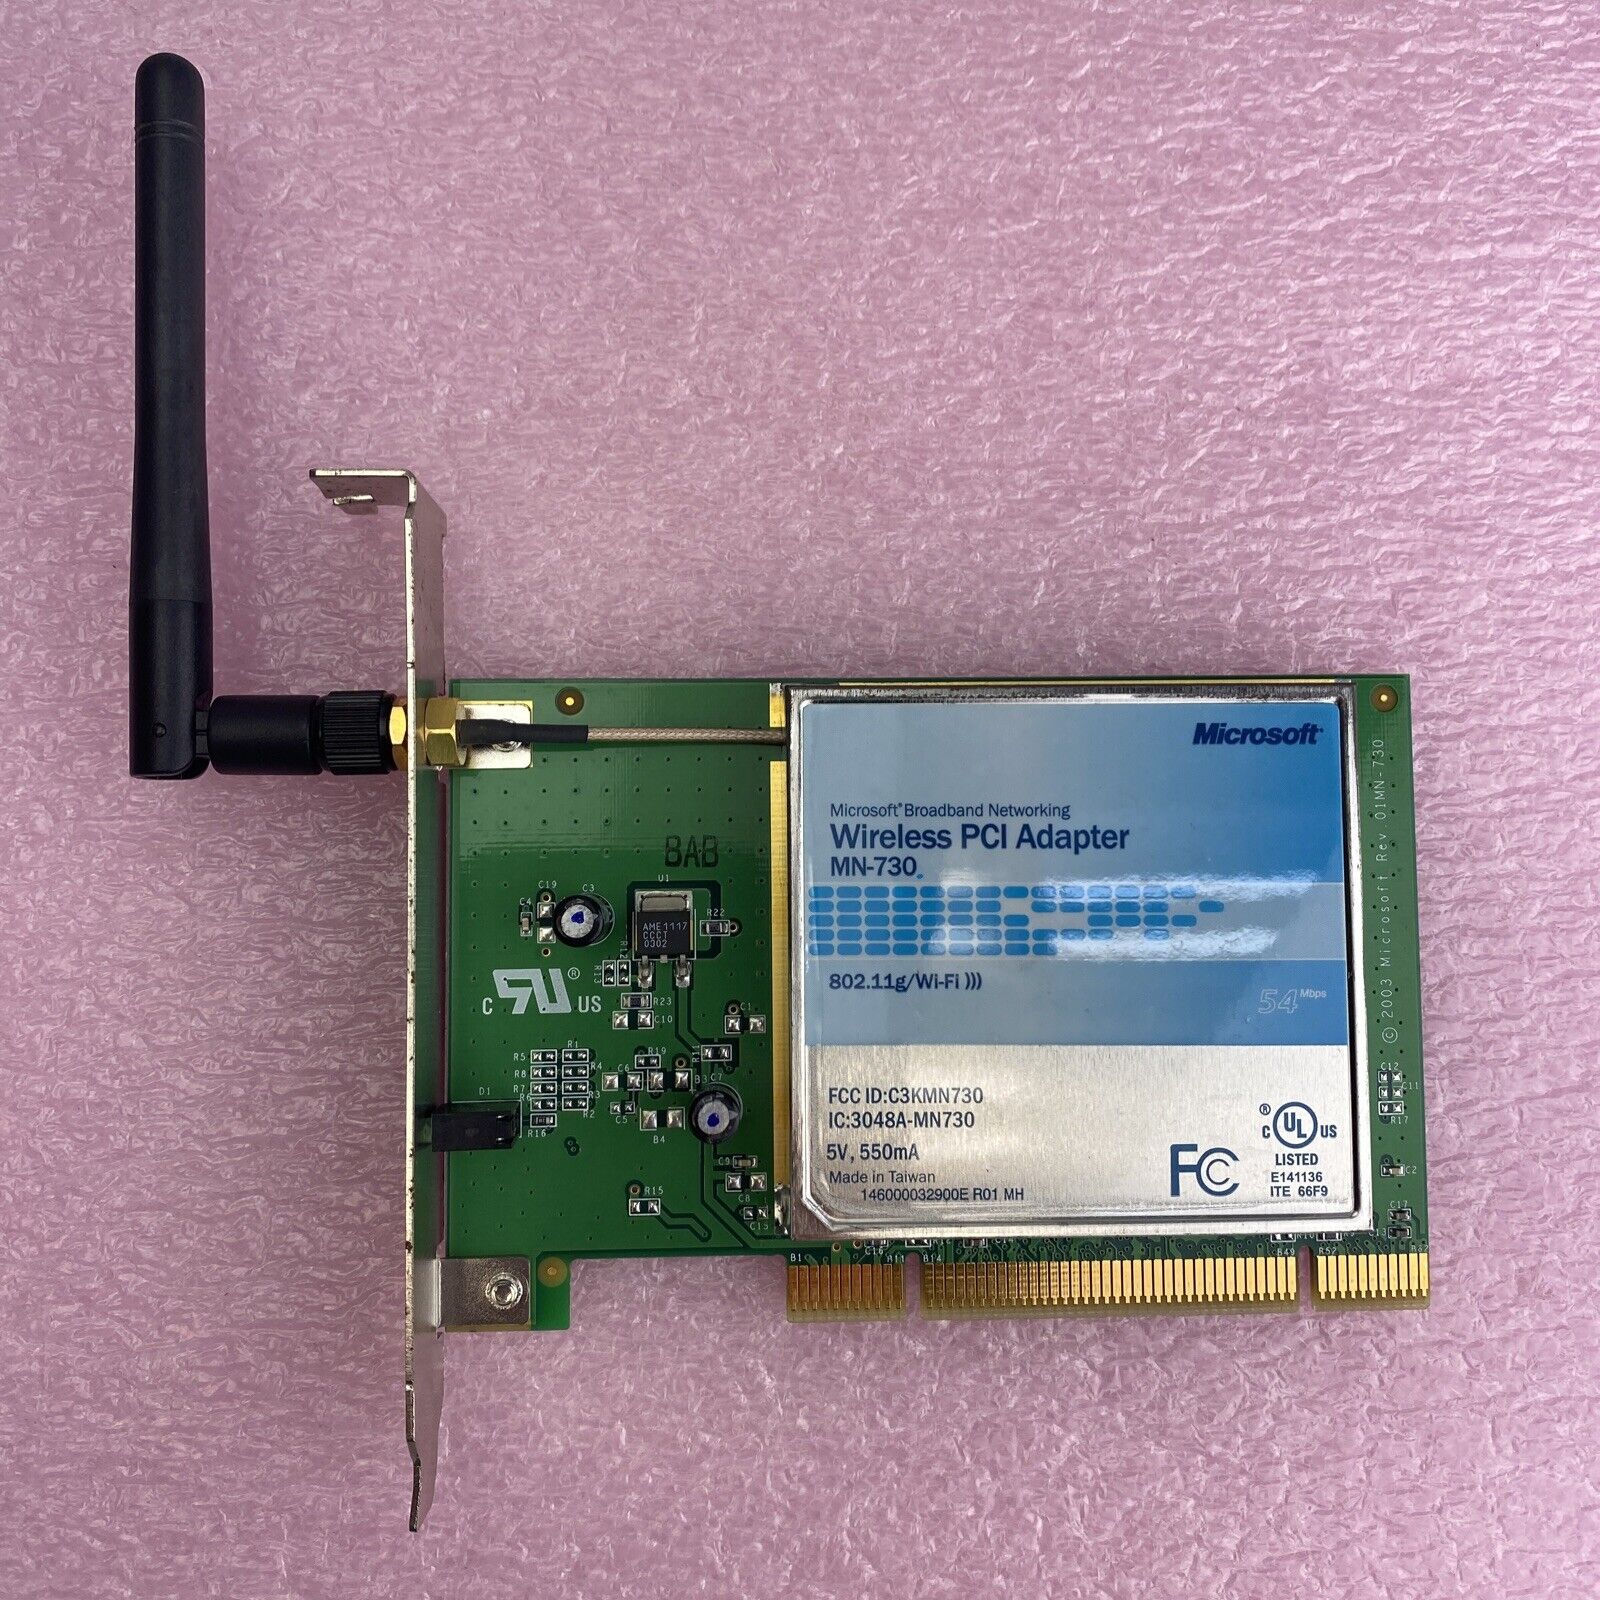 Microsoft Broadband Networking MN-730 Wireless PCI Adapter